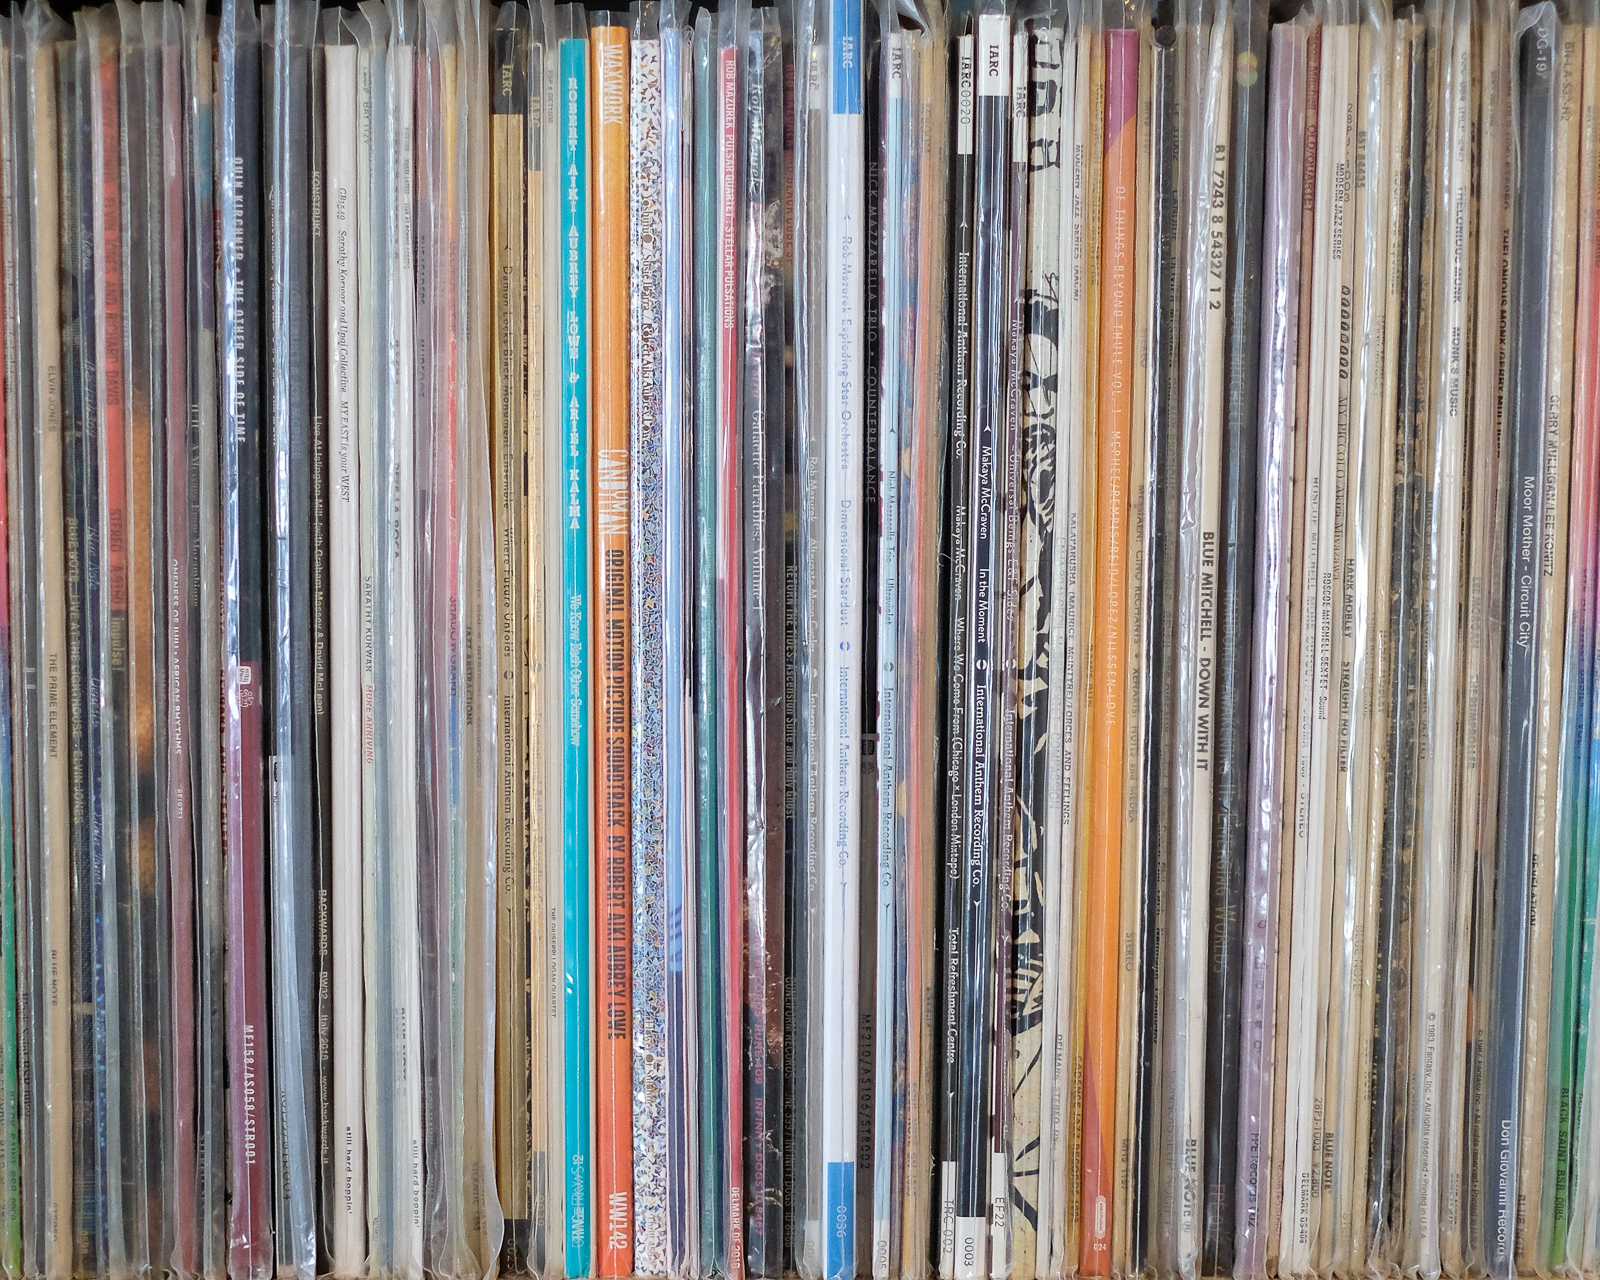 Non-rock records, J-M